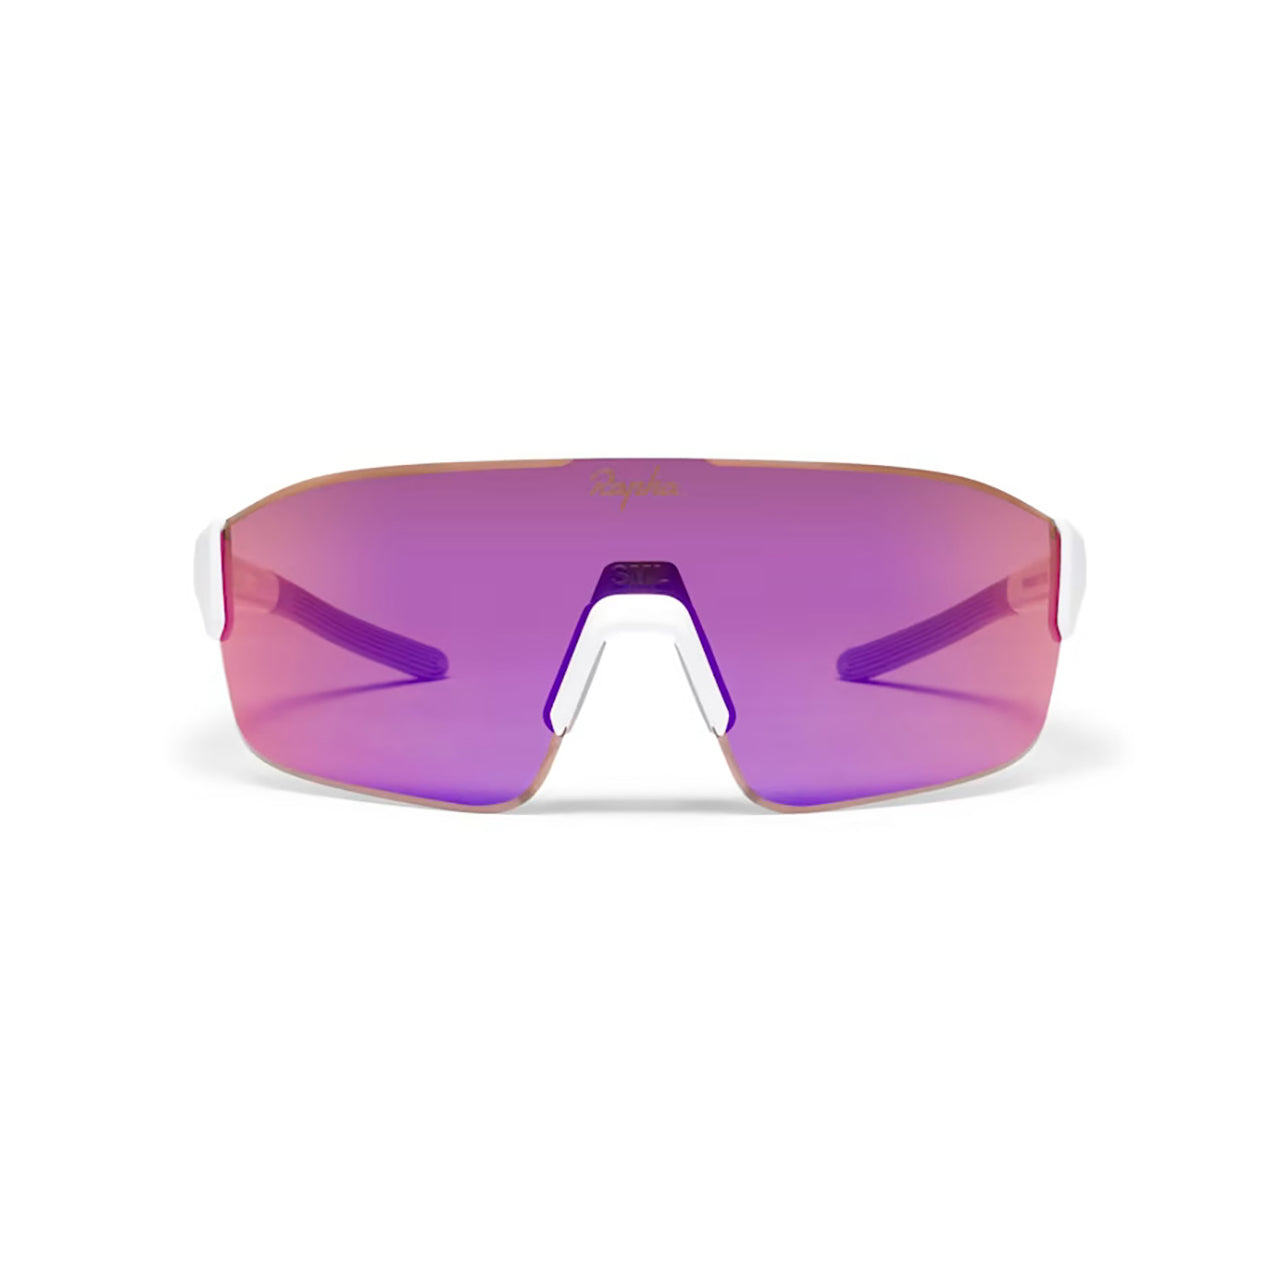 Rapha  Pro Team Frameless Glasses